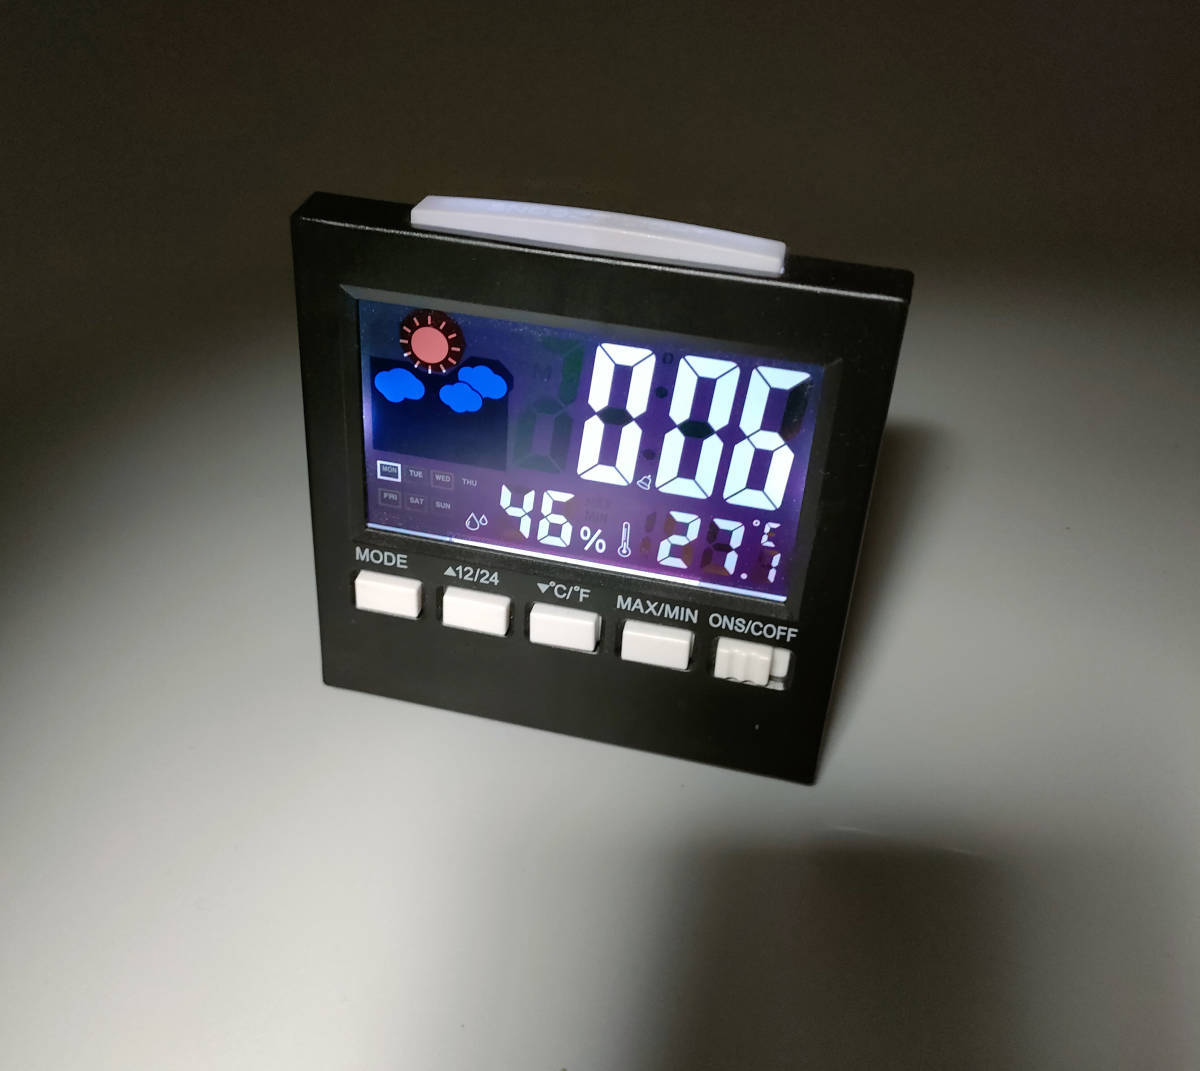 置き時計 デジタル温湿度計 目覚まし時計 時計 温度 体感表示 大画面 多機能 乾燥対策 健康管理 人感センサー 寝室用 コンパクト_画像4